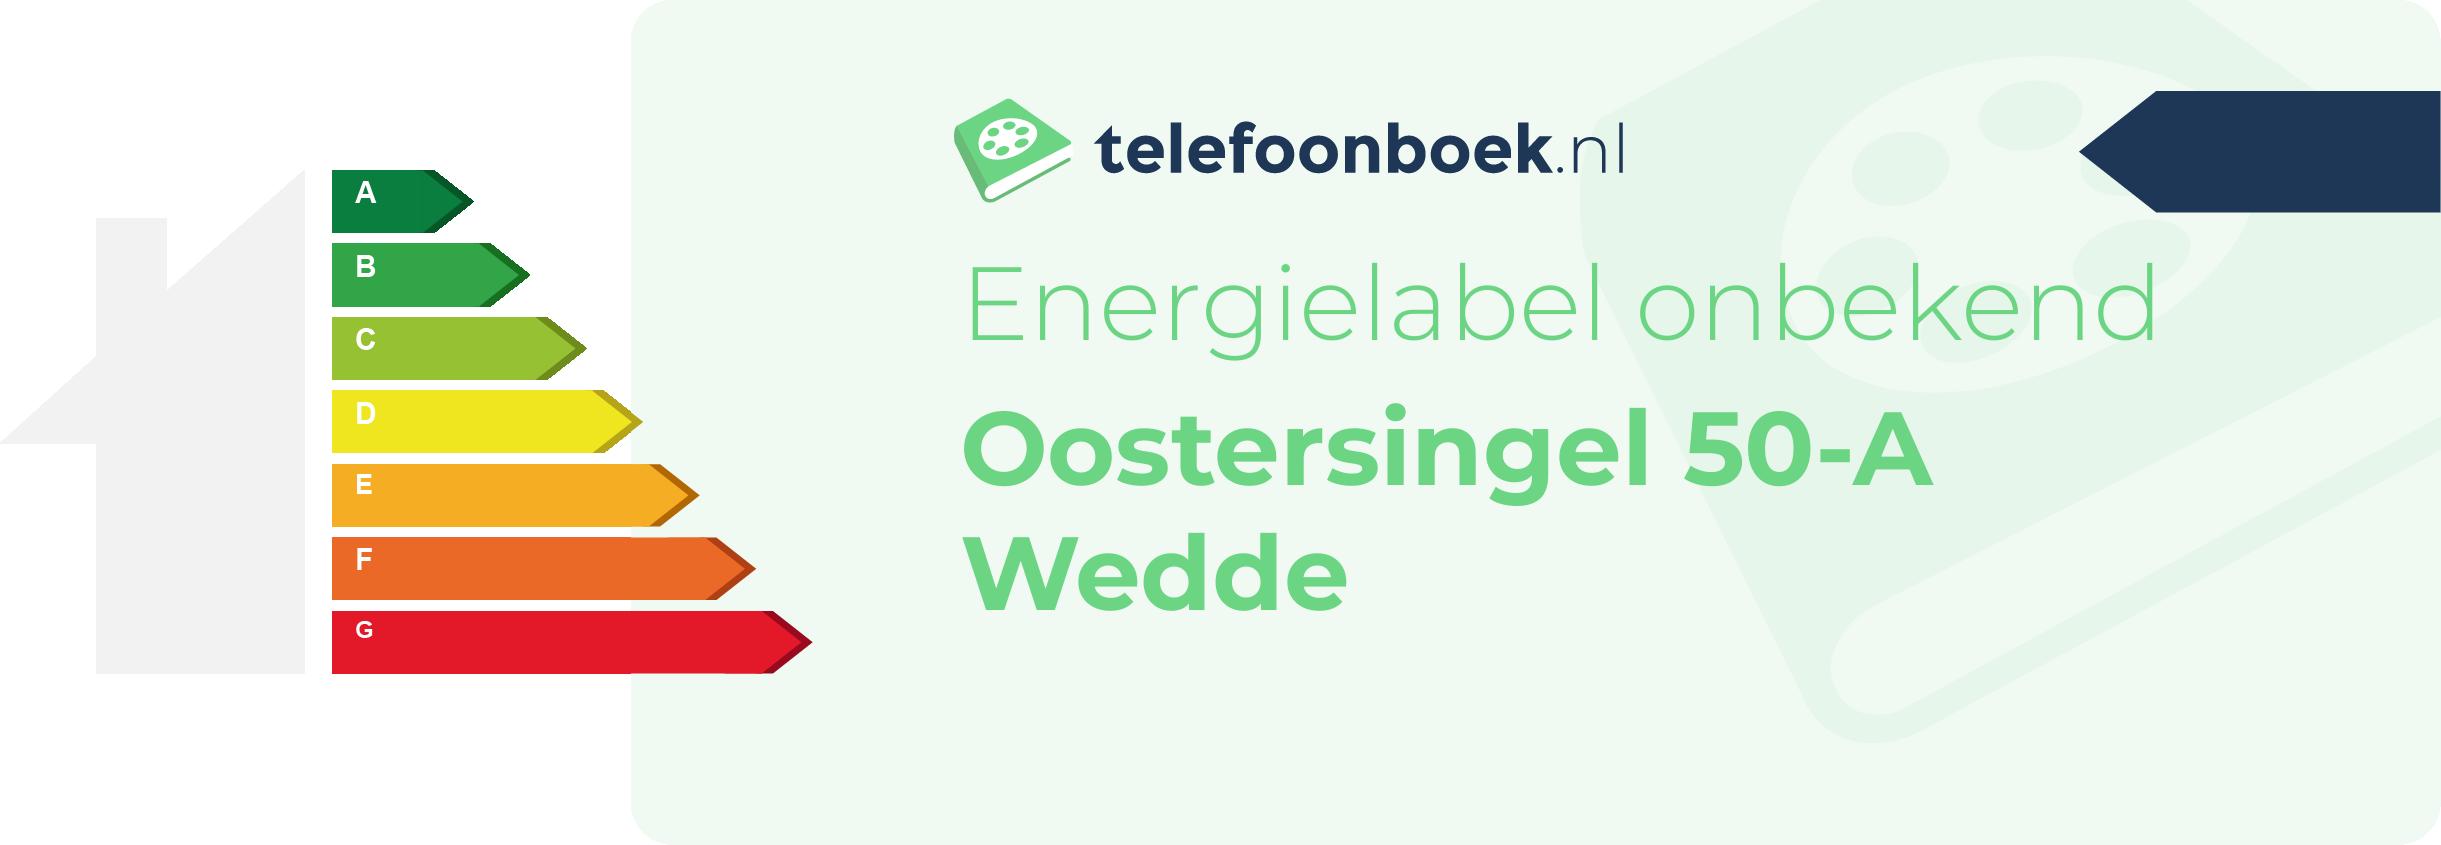 Energielabel Oostersingel 50-A Wedde